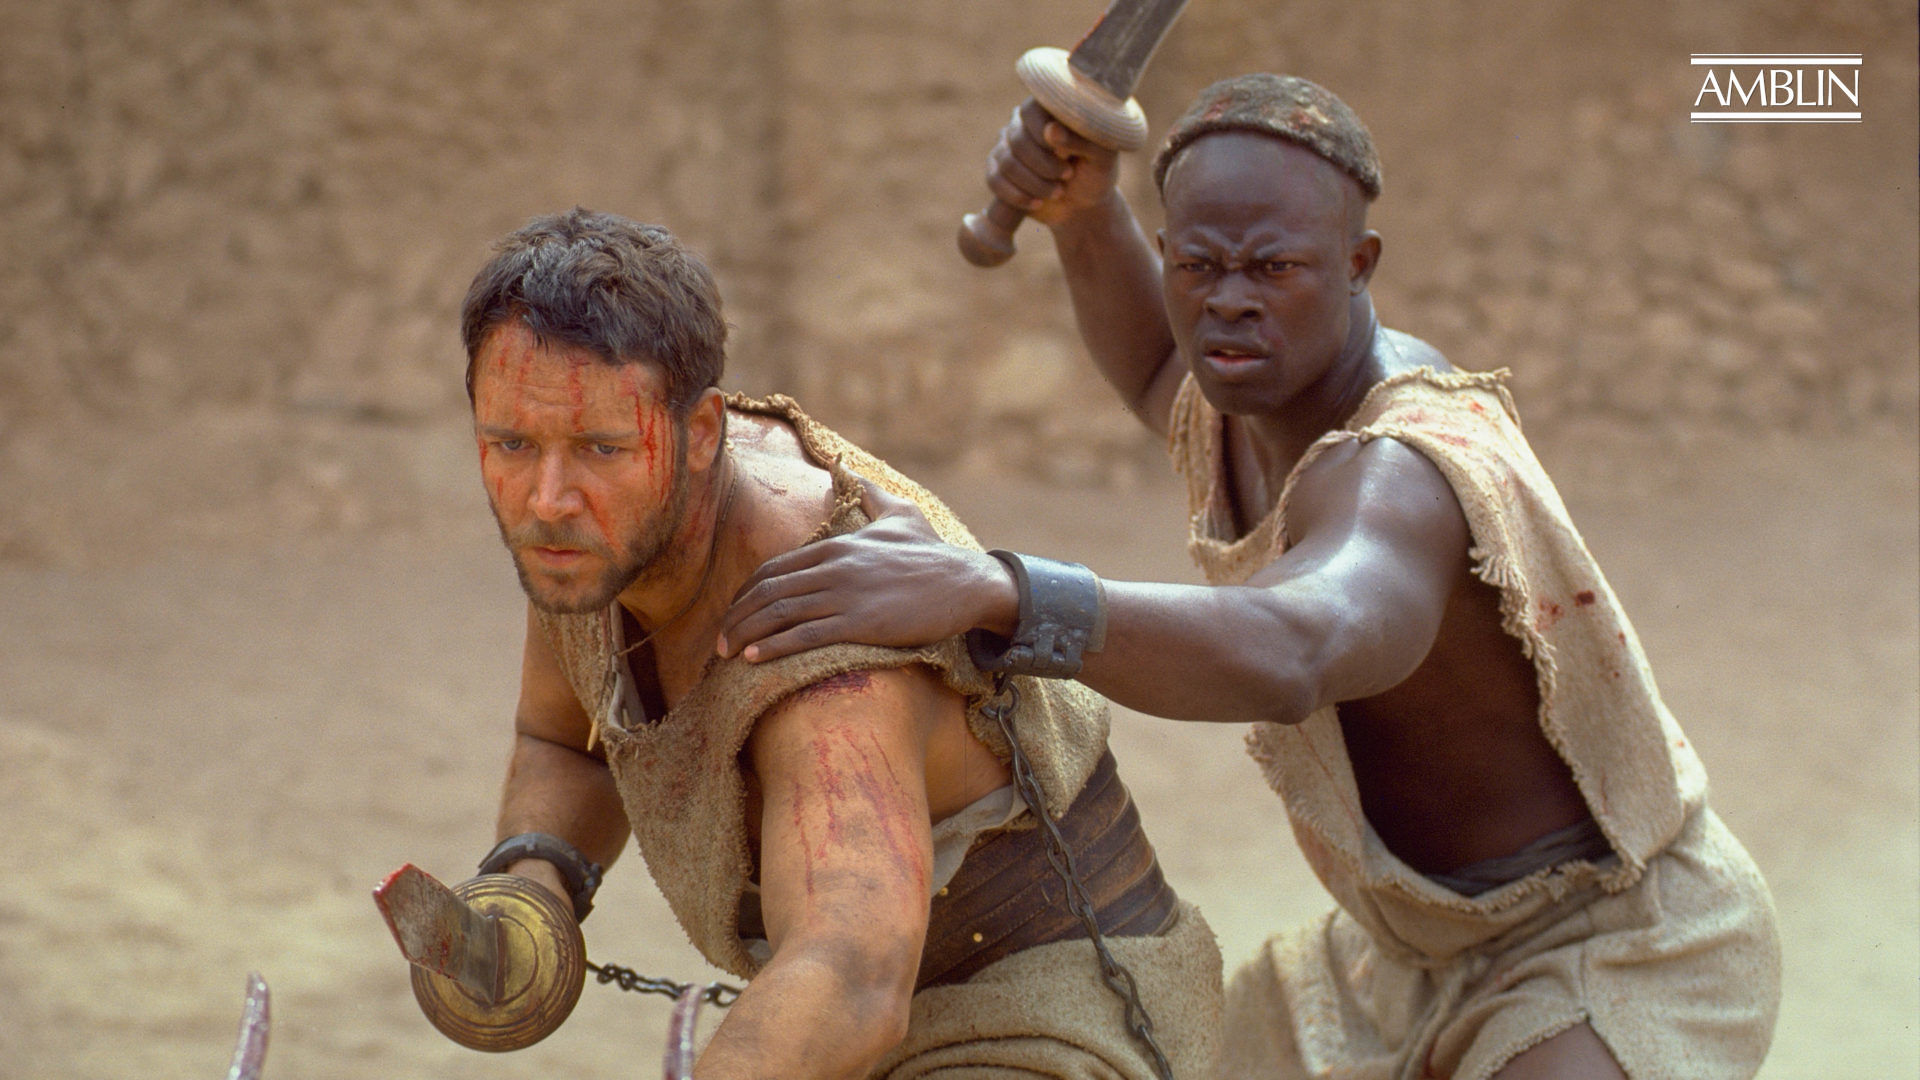 فیلم «گلادیاتور» (Gladiator) که در سال 2000 منتشر شد یک فیلم حماسی تاریخی هیجان انگیز بود که برنده چندین جایزه اسکار از جمله بهترین فیلم سال شد.